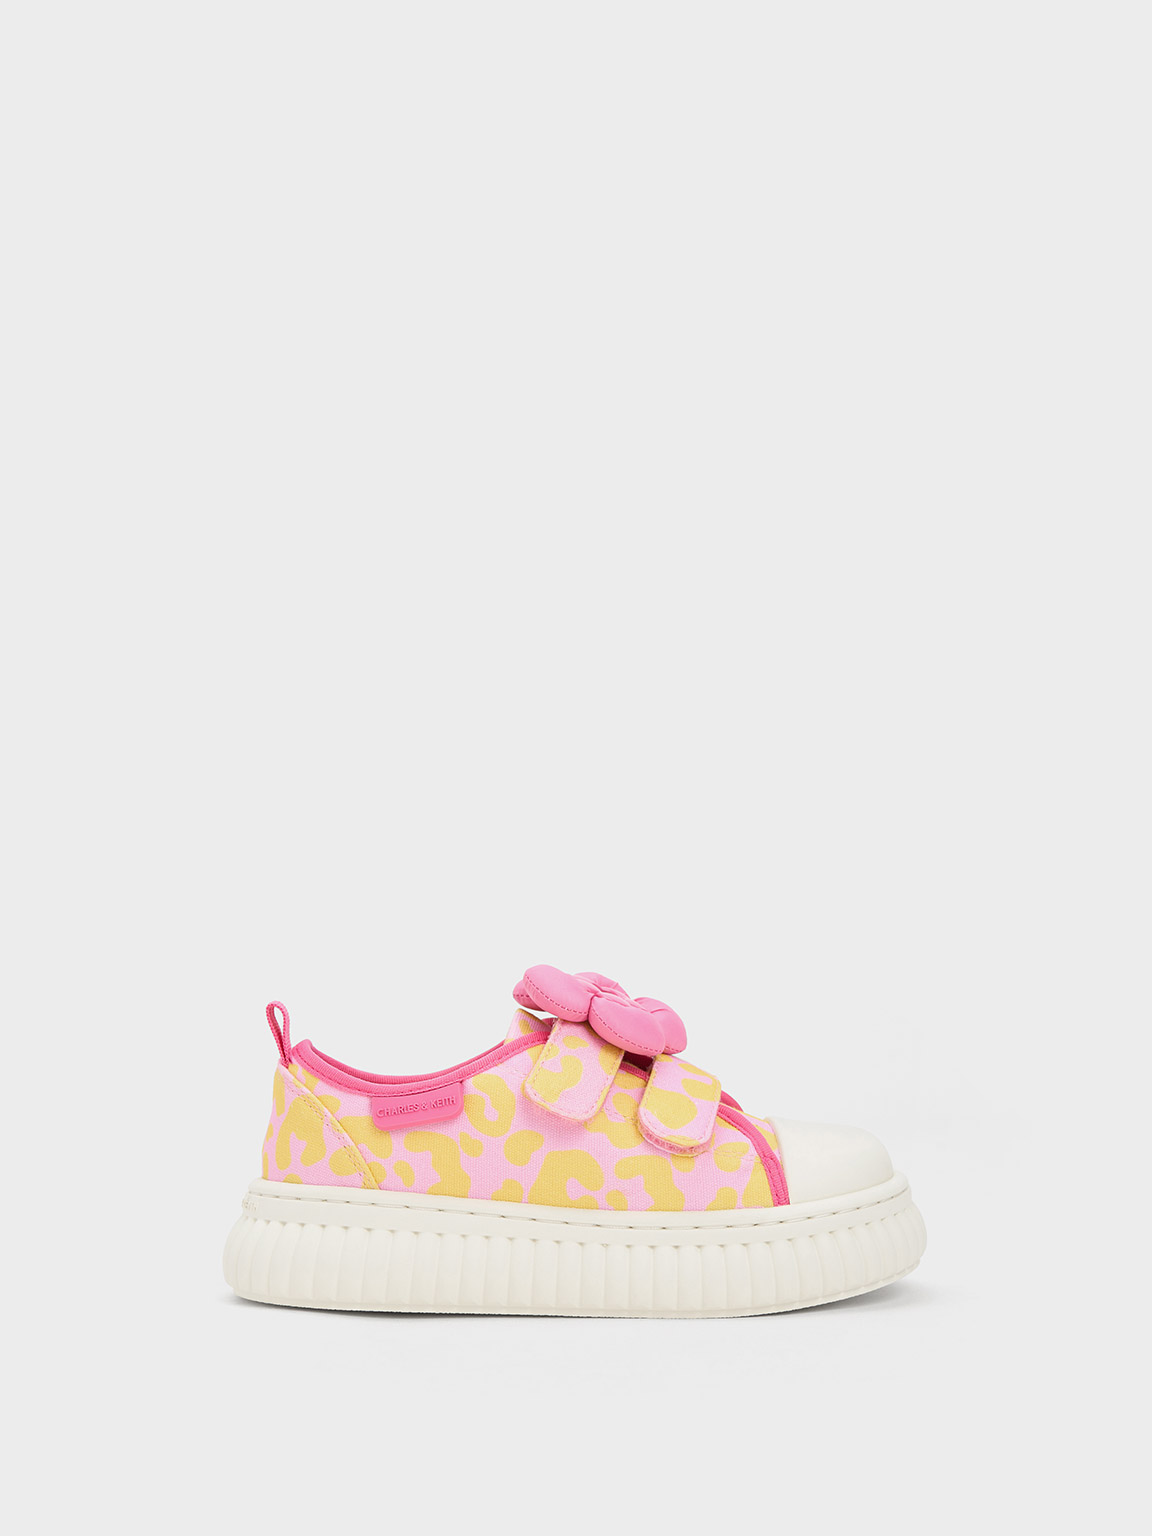 Girls’ Puffy Flower Printed Sneakers